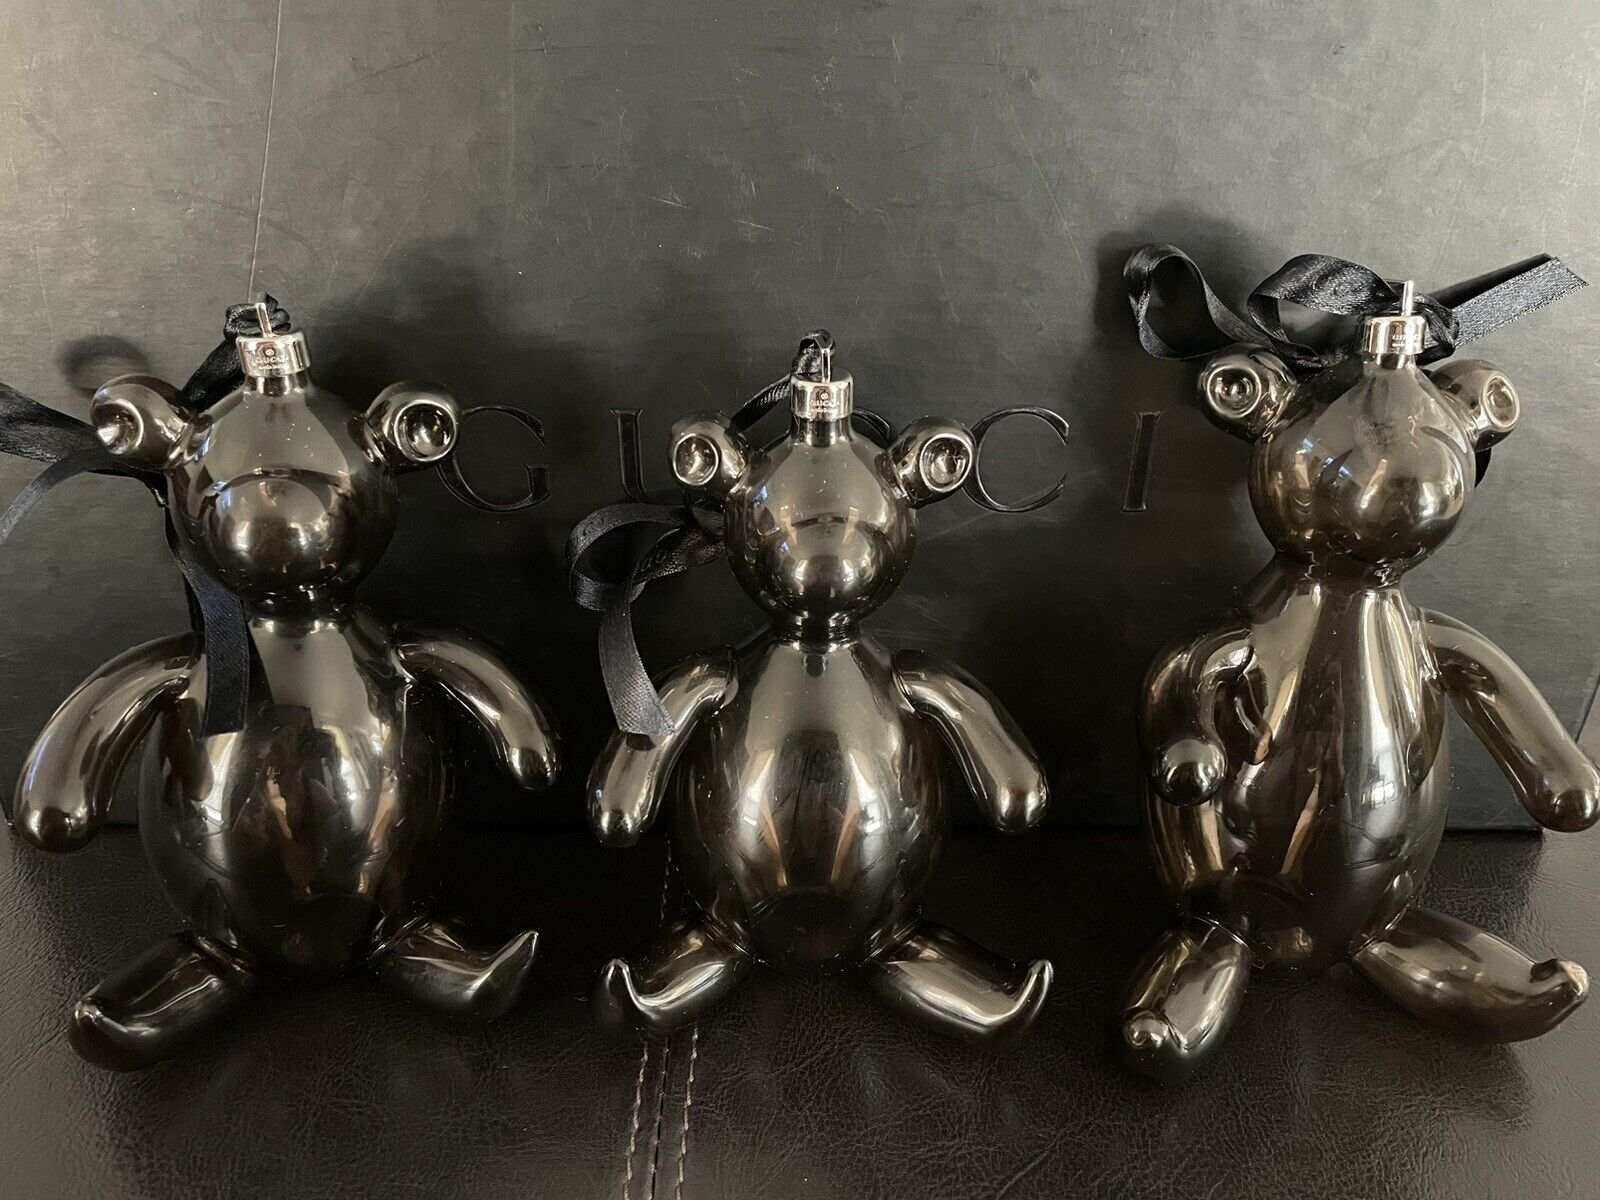 Three Gucci Black Glass Bear Ornaments from Tom Ford Era